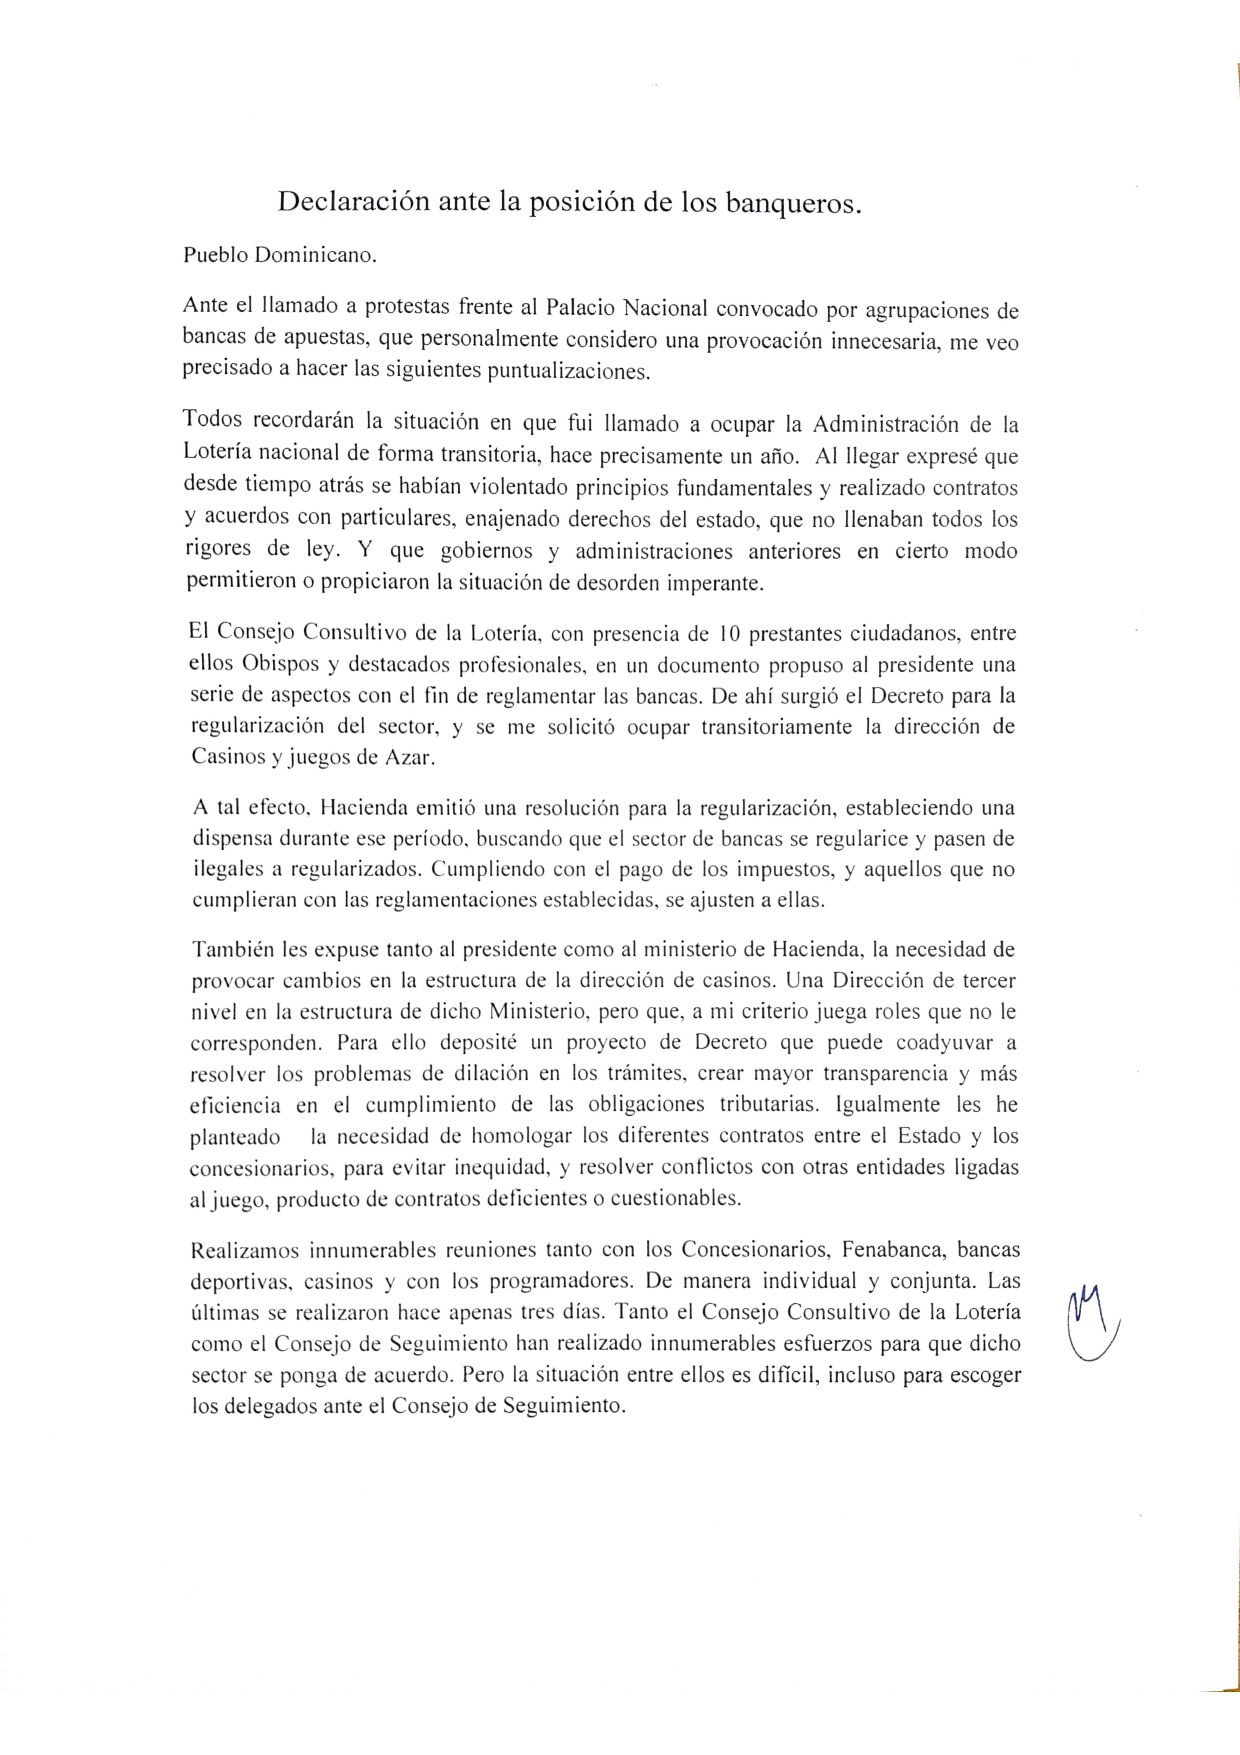 Declaraciones_de_Quico_Tabar_ante_la_posicin_del_los_banqueros_page-0001.jpg